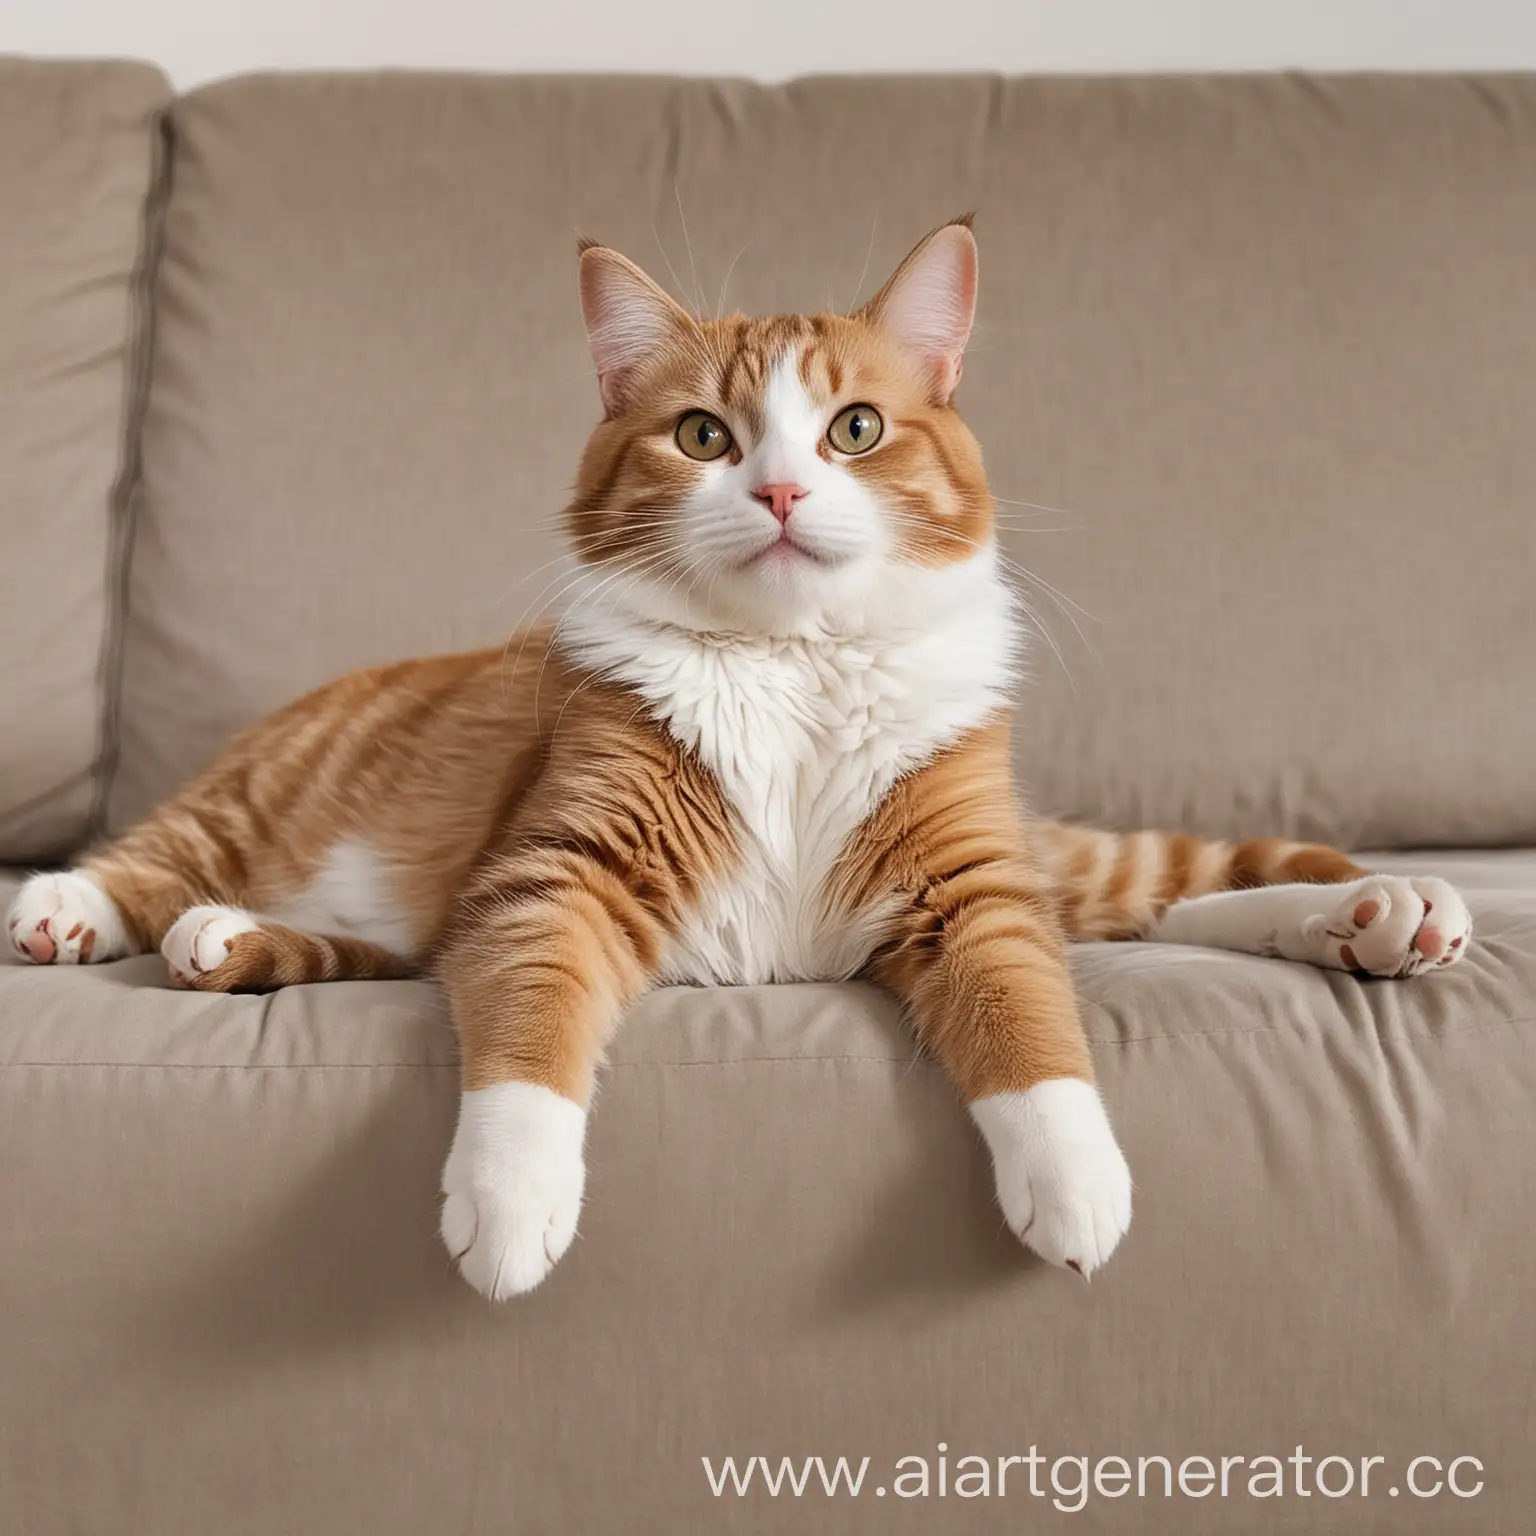 довольный кот, который лежит на диване свесив лапы, диван светлый, фон за котом светлый, 